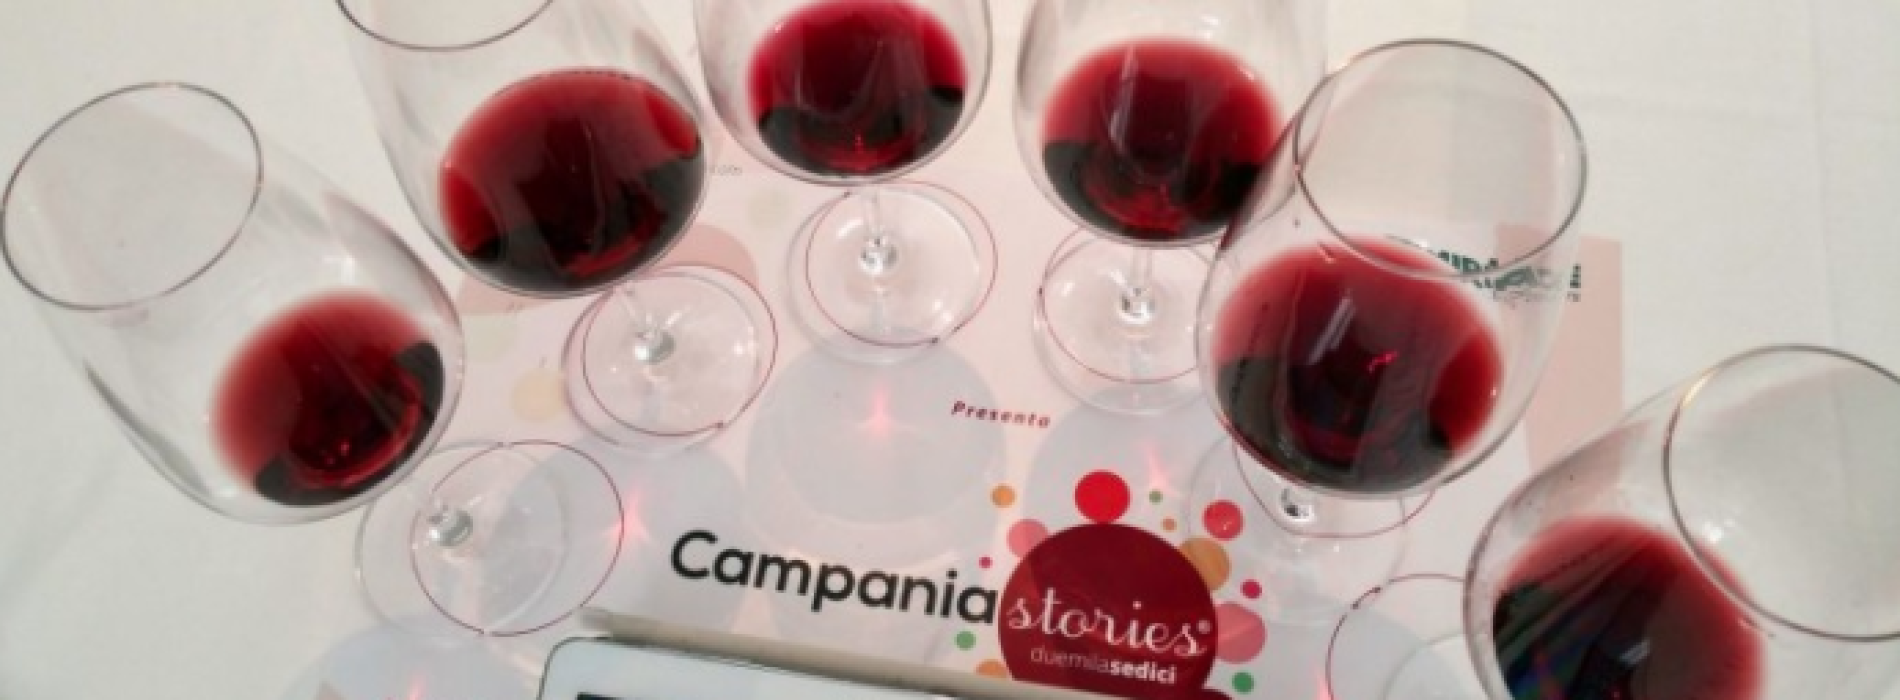 Campania stories, i vini di eccellenza nella Reggia di Caserta